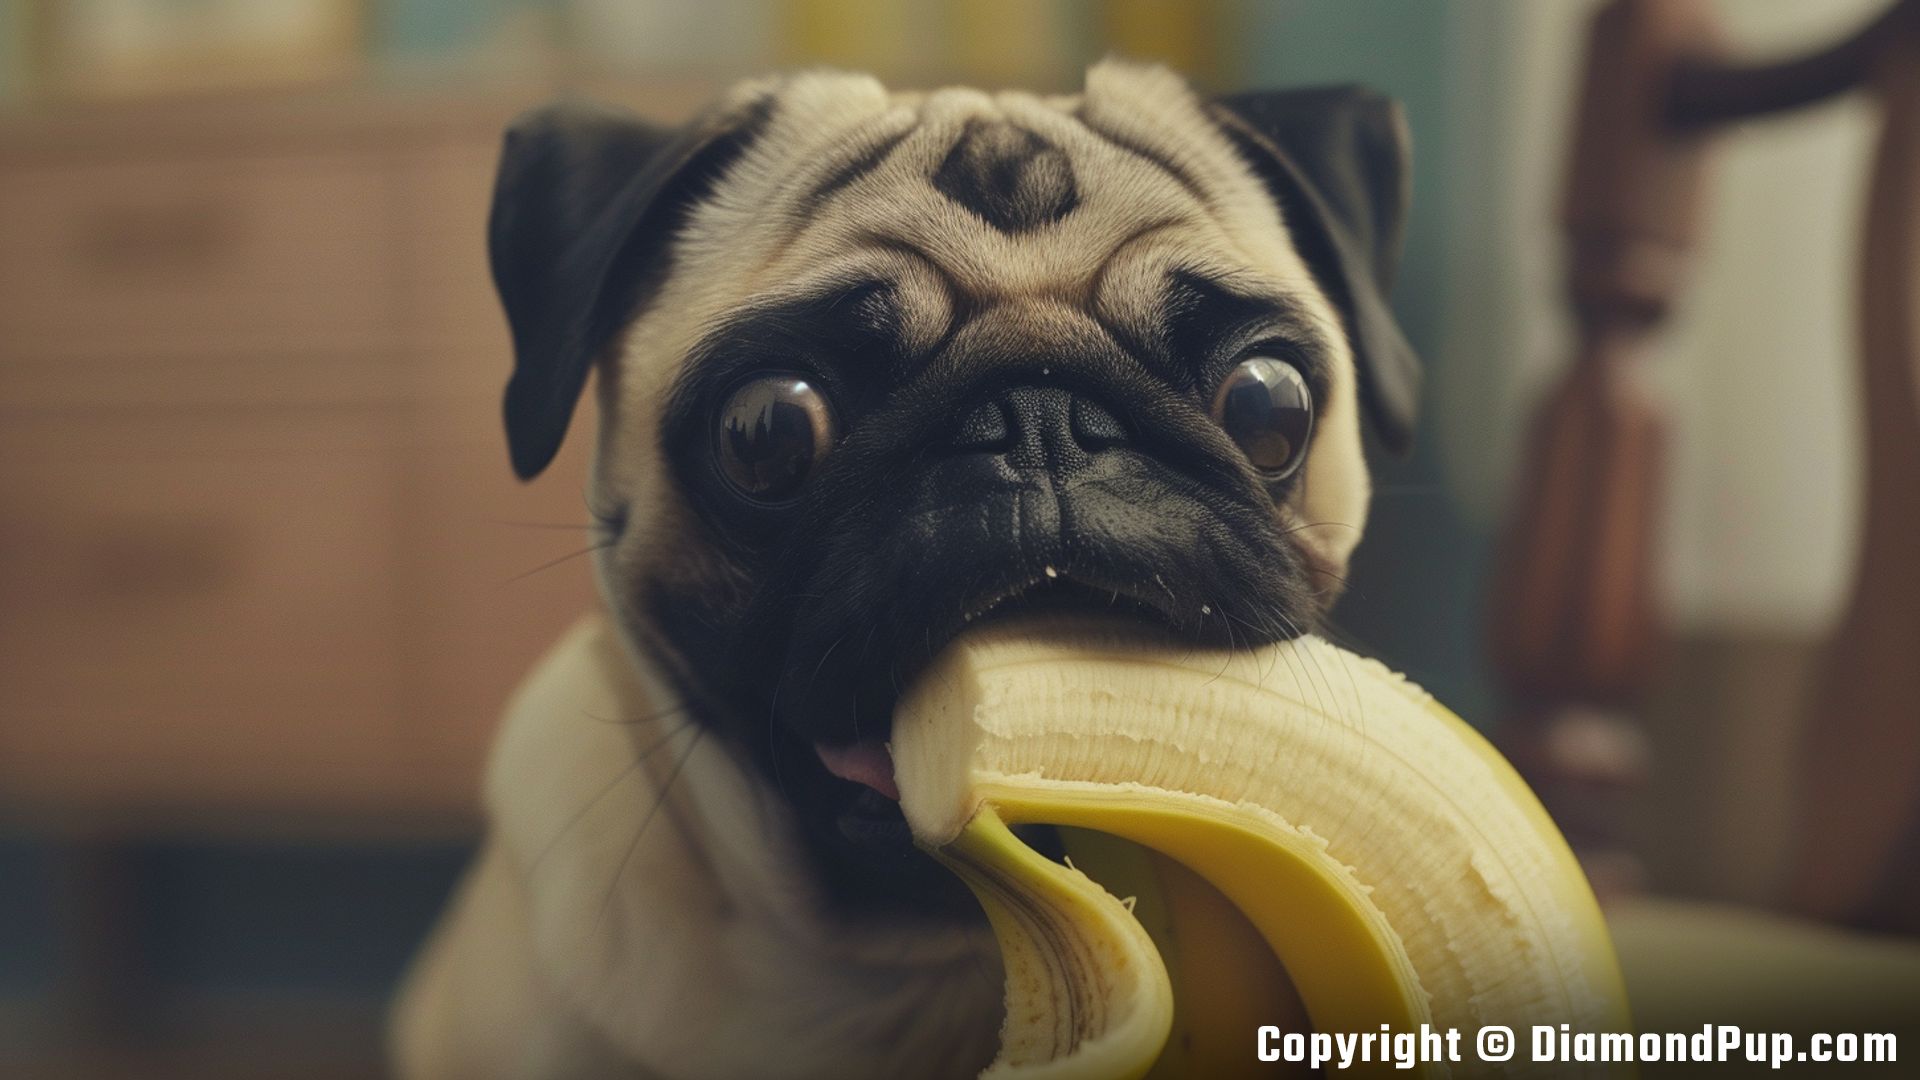 Photo of an Adorable Pug Snacking on Banana